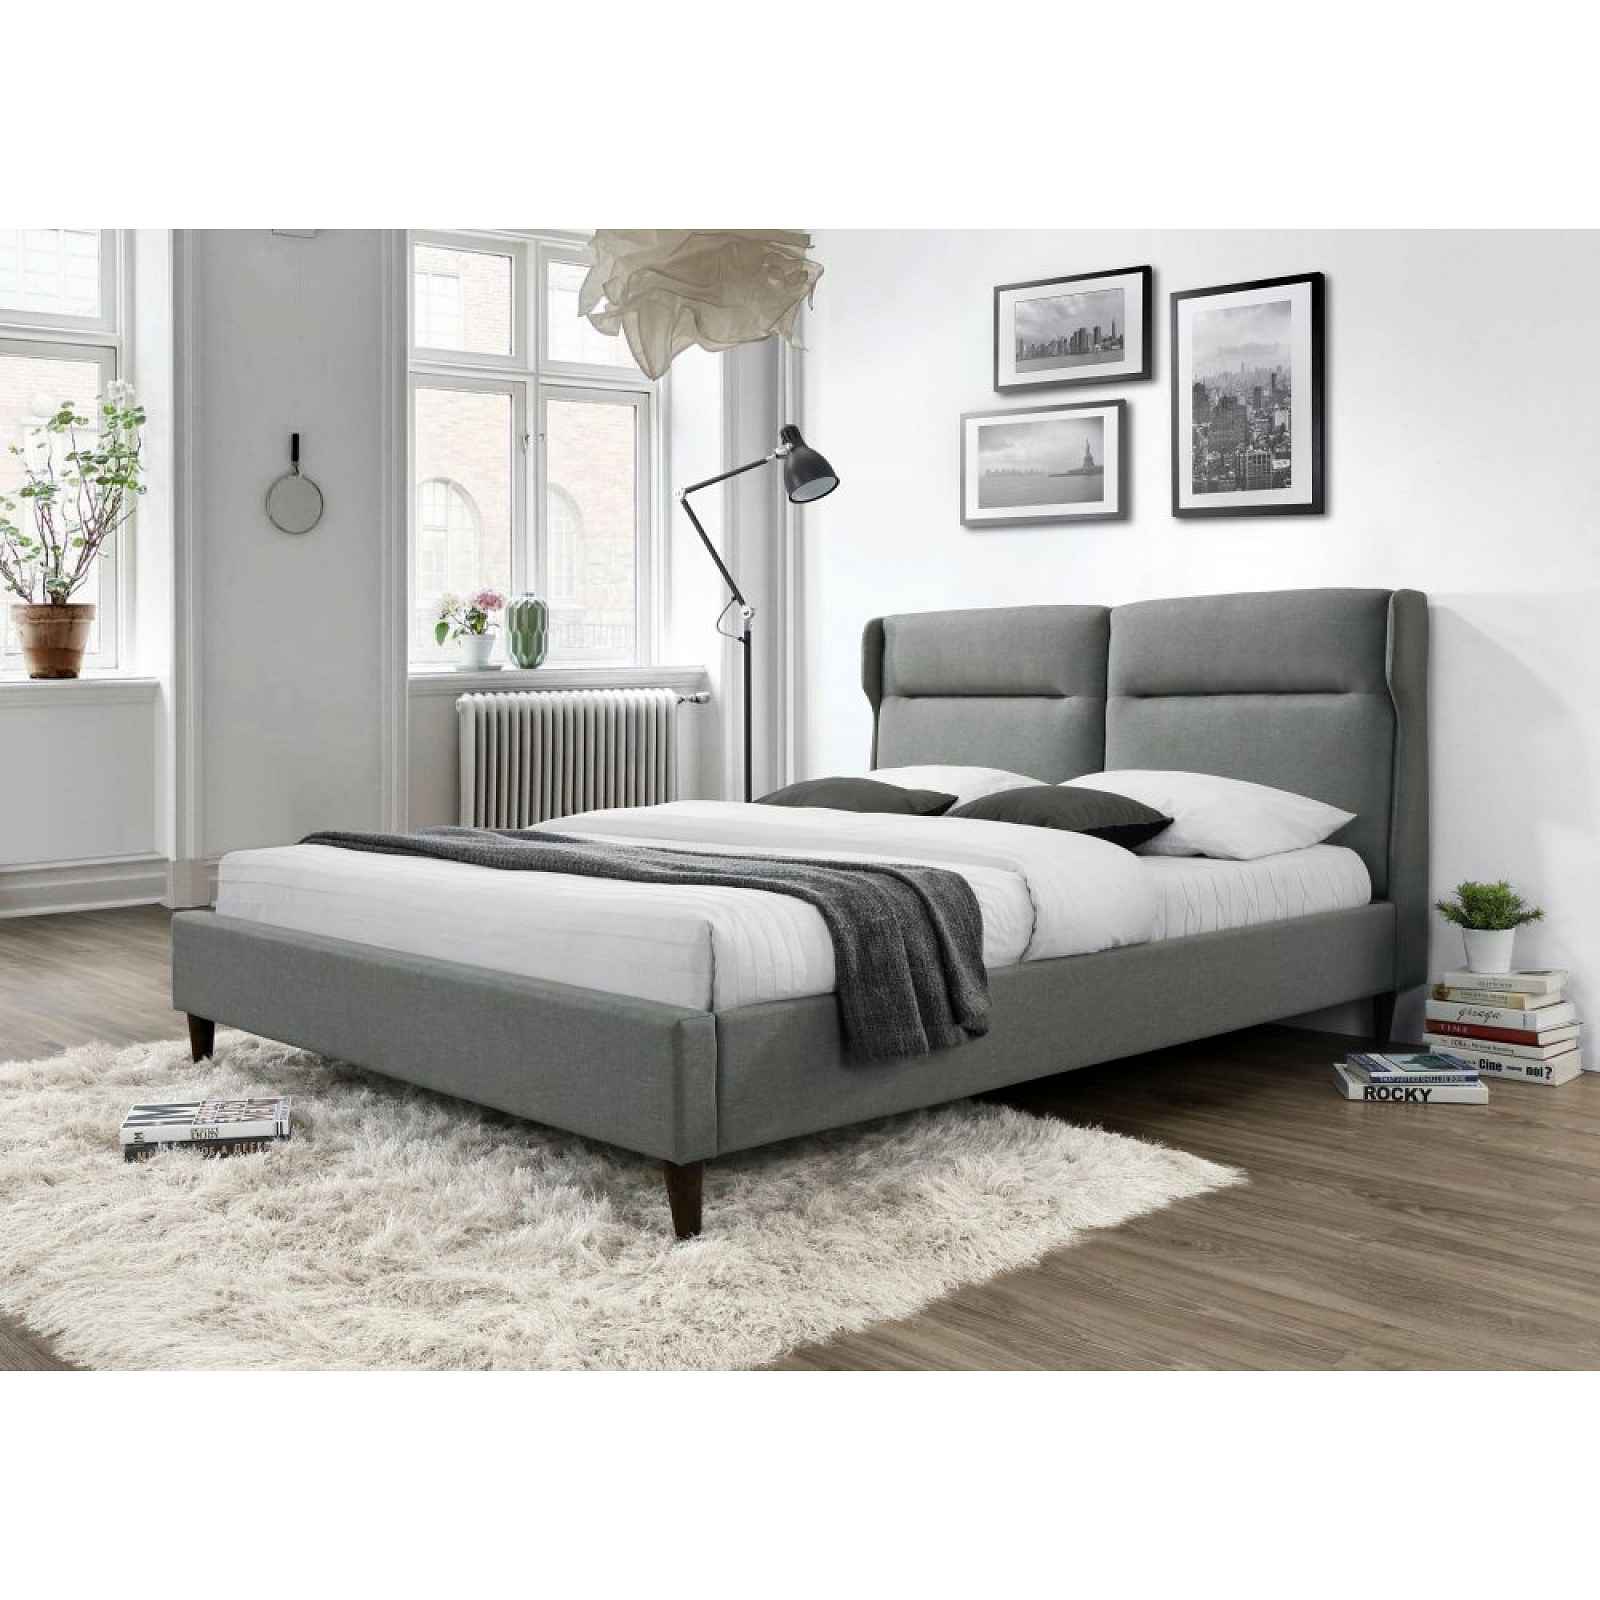 Moderní čalouněná postel Sanco, 160x200cm HELCEL